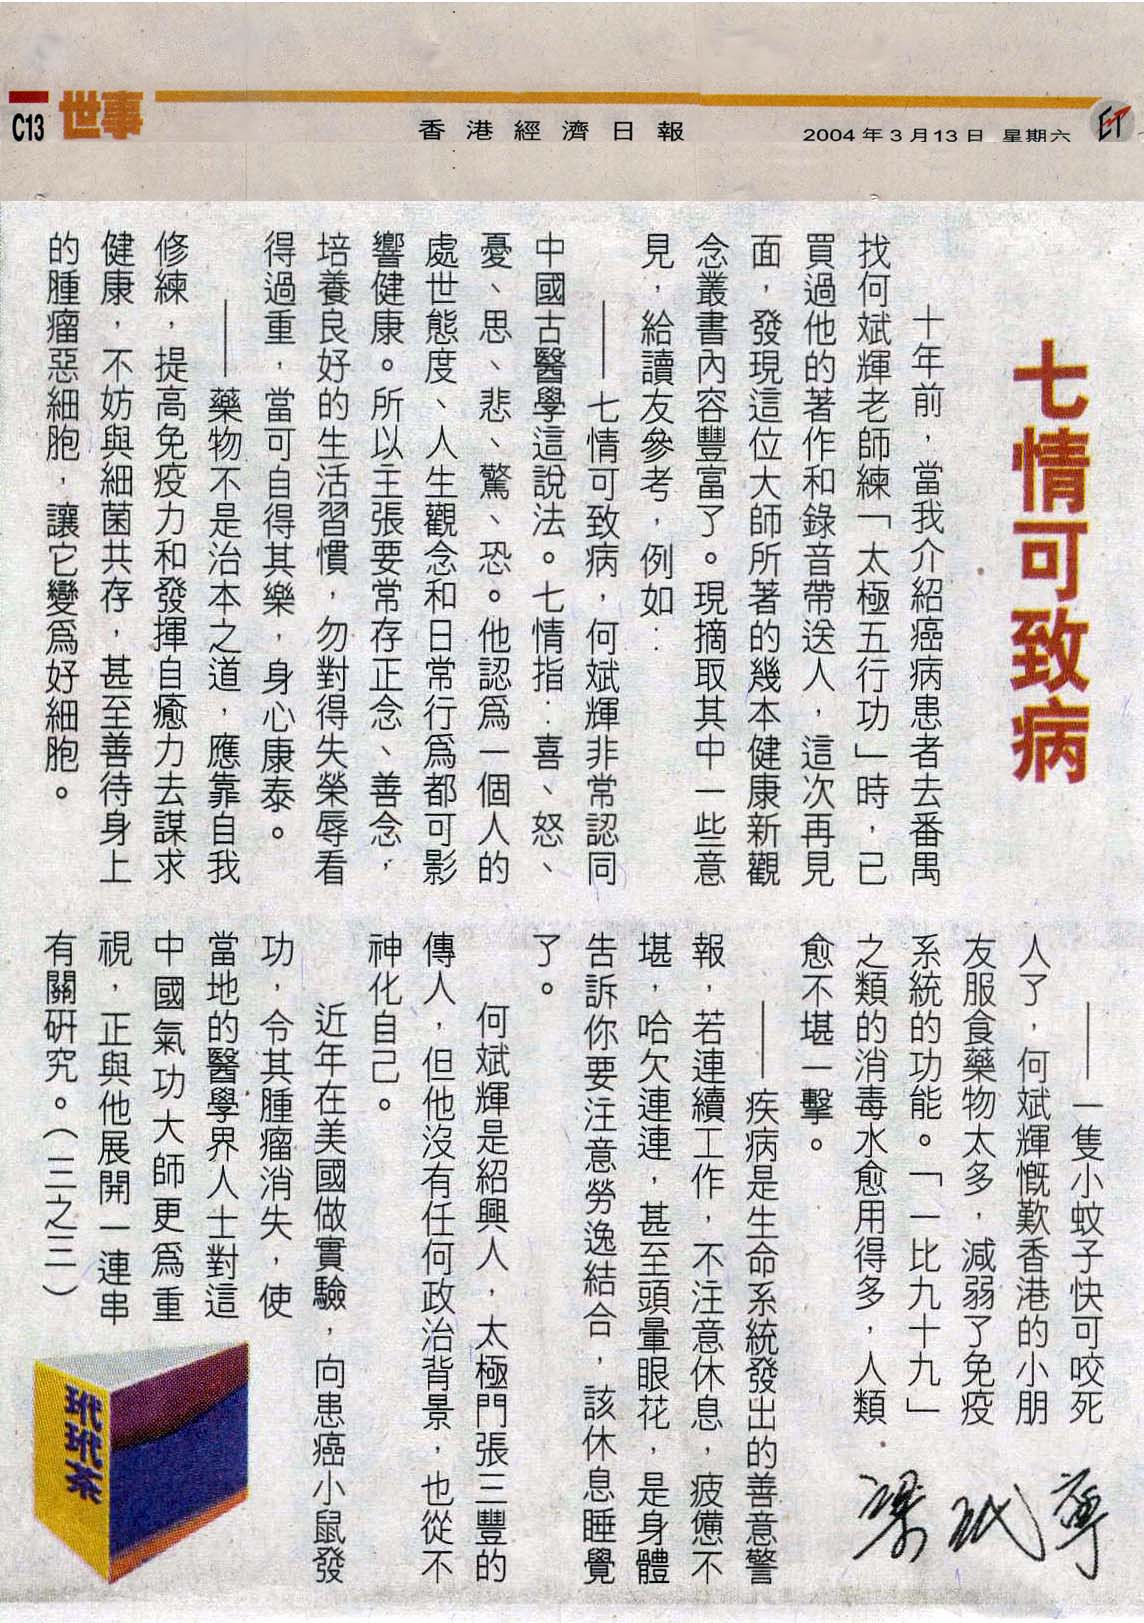 香港經濟日報︰2004年3月13日 (七情可致病)